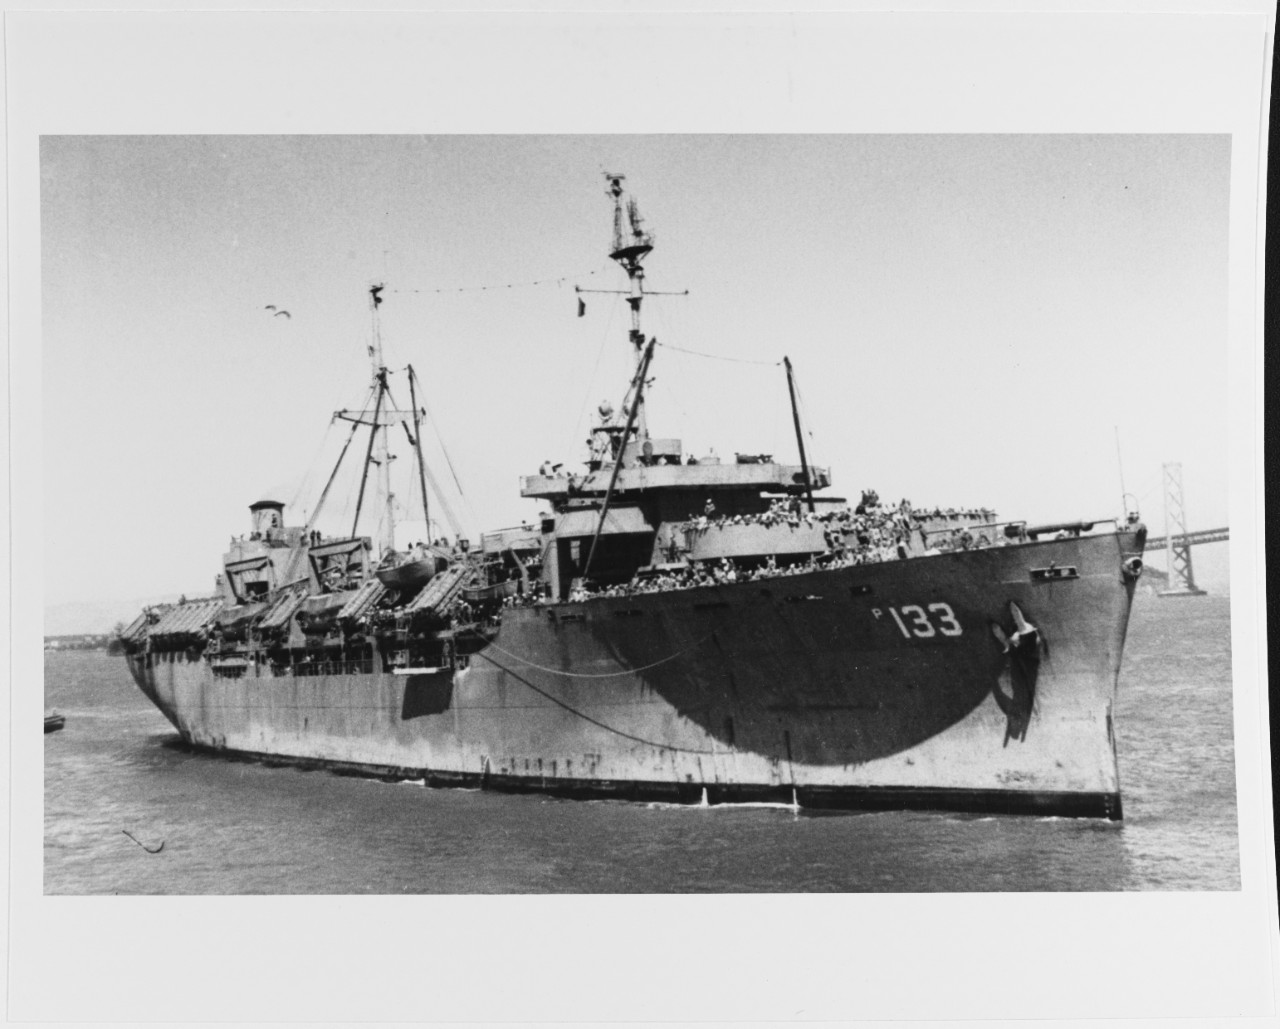 USS GEN. O. H. ERNST (AP-133)